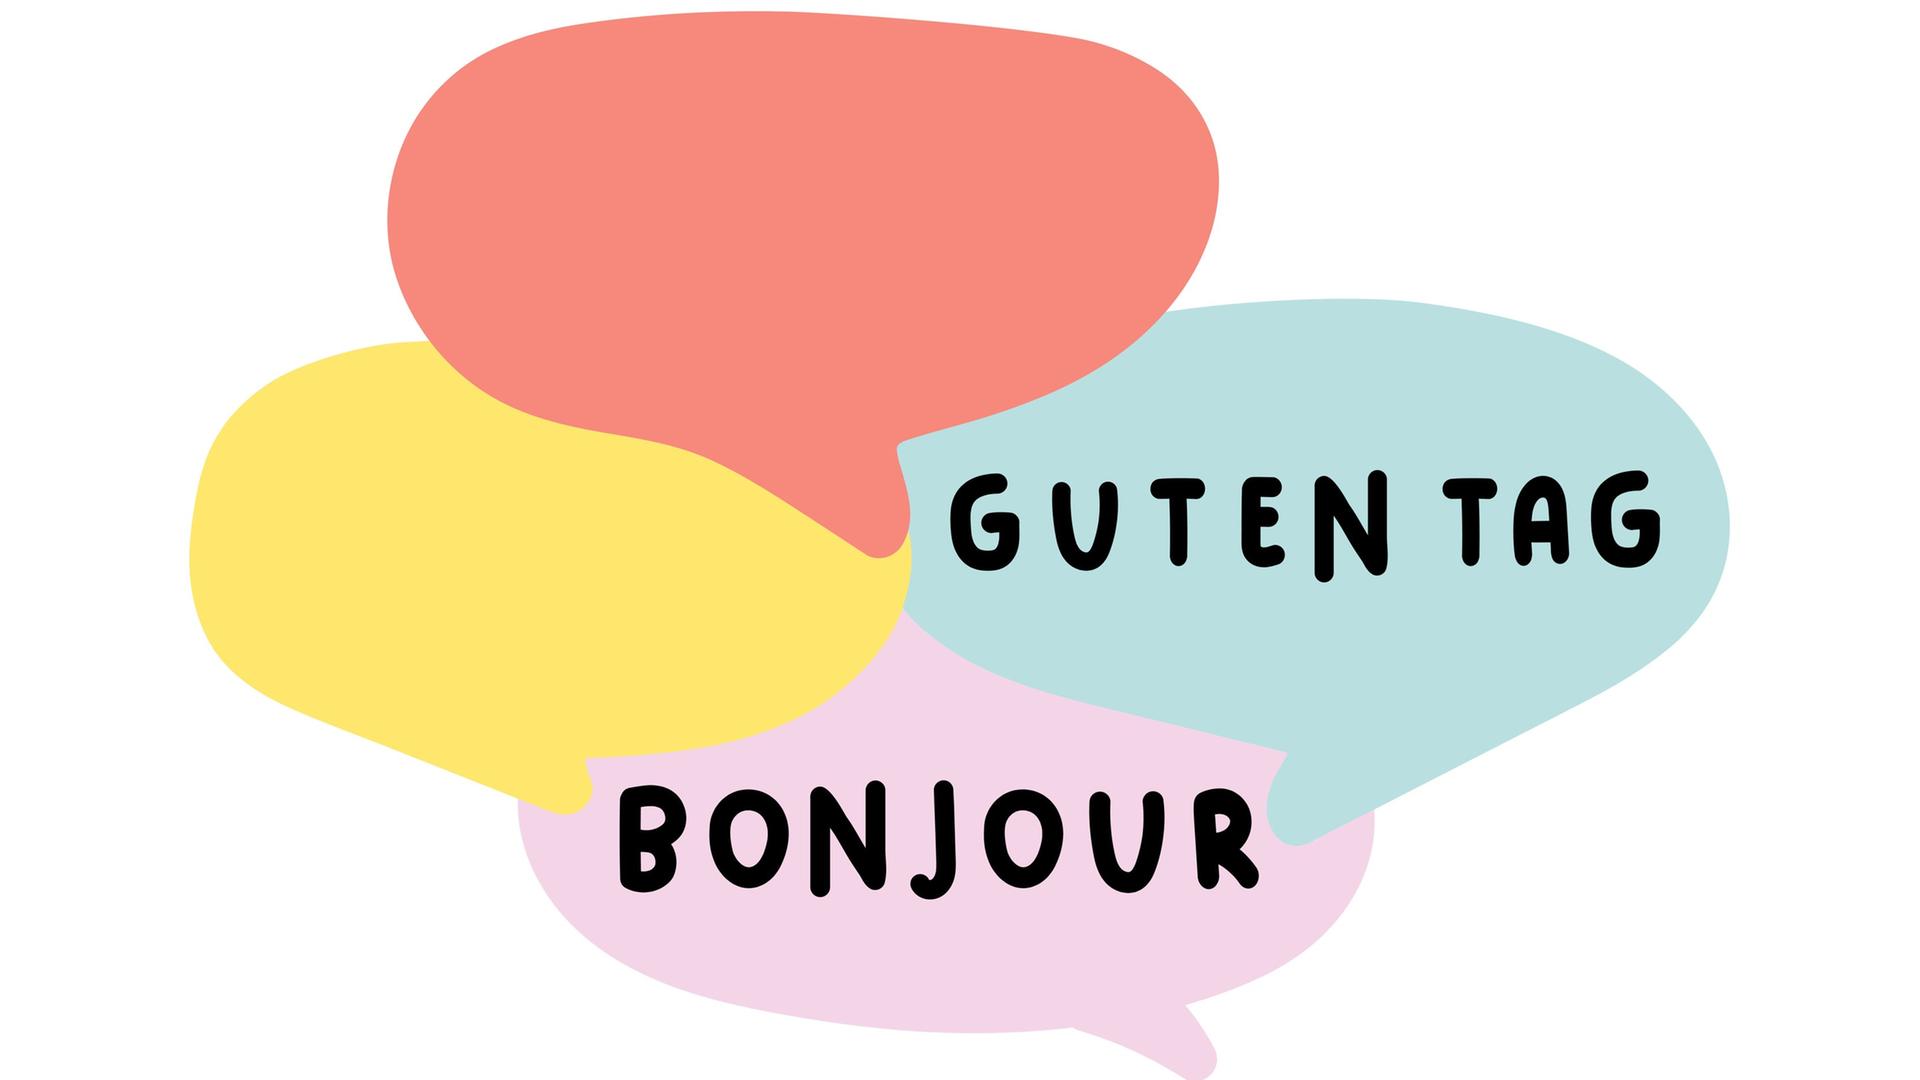 In der Illustration sind Sprechblasen mit den Worten "Bonjour" und "Guten Tag" zu sehen.